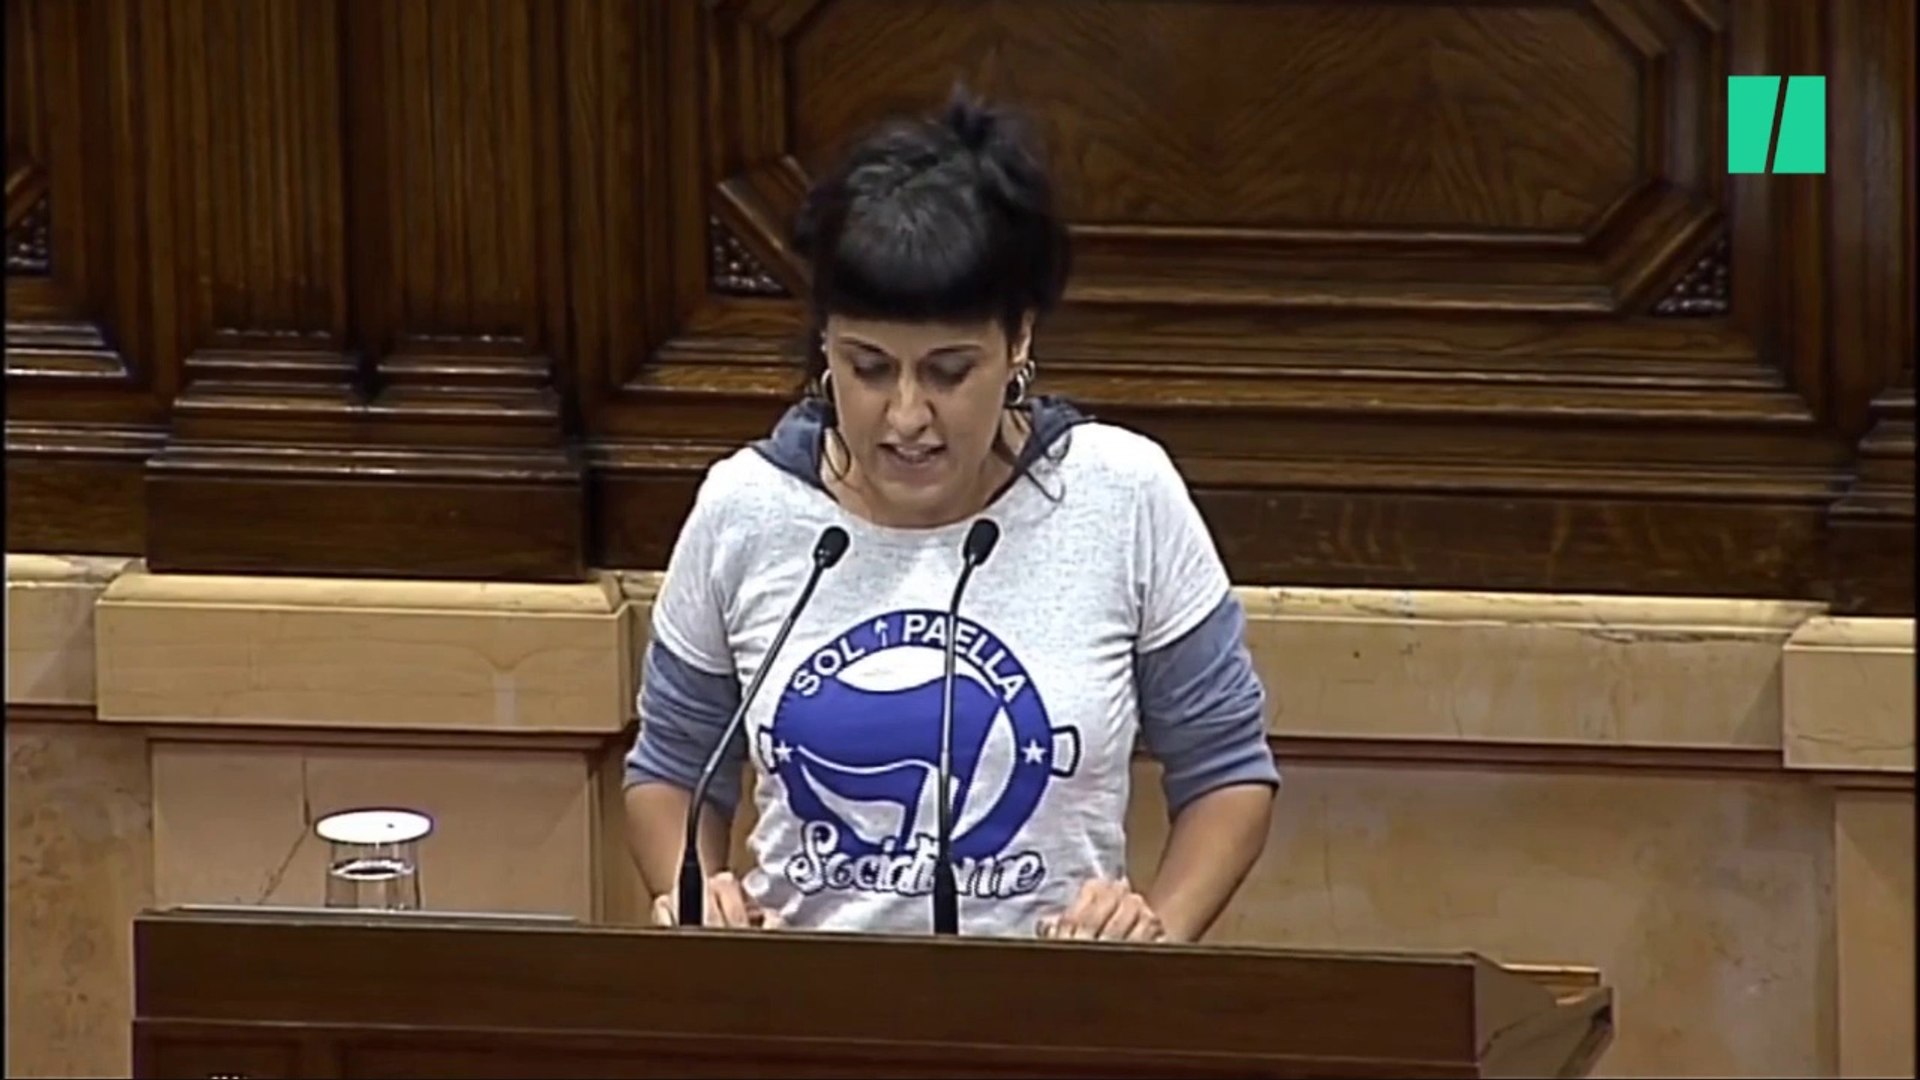 Anna Gabriel da mucho que hablar por la camiseta que ha llevado al  Parlament - Vídeo Dailymotion